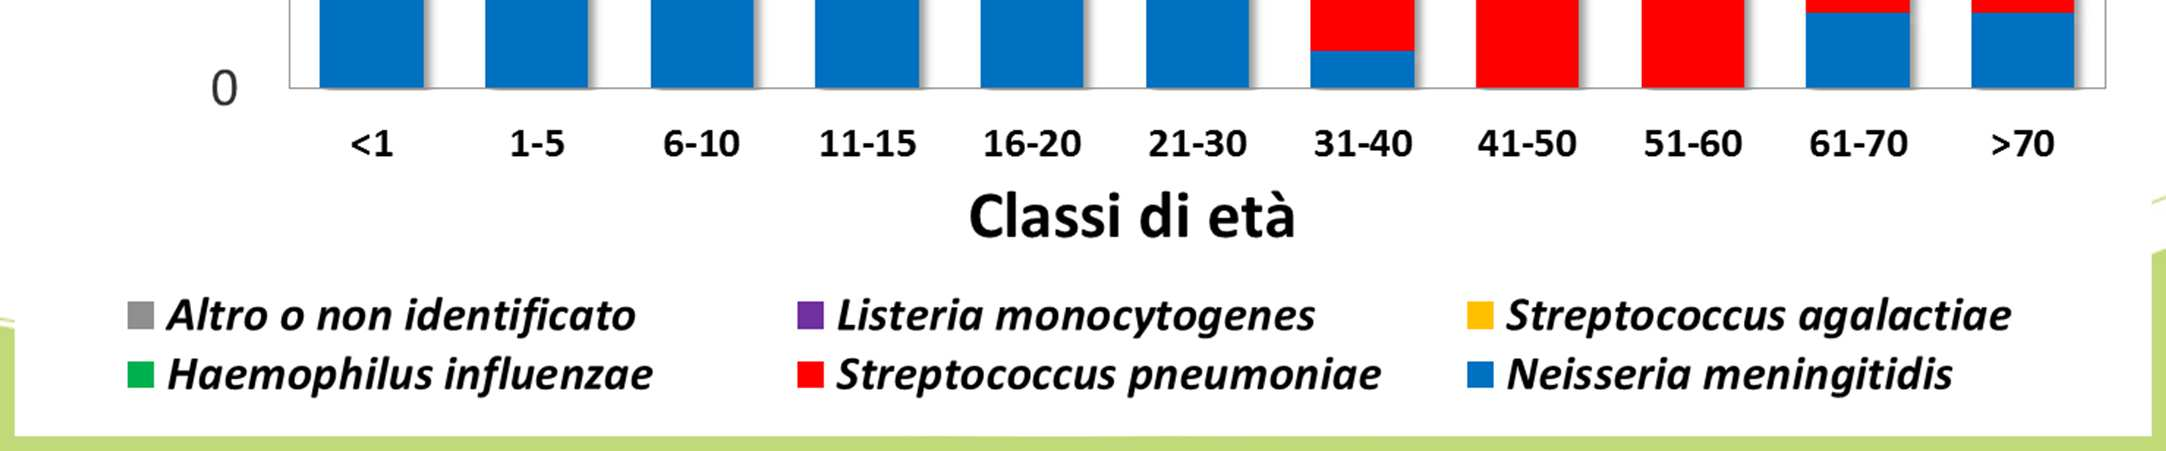 Classi di età dei pazienti con meningite batterica in Provincia di Bolzano (149